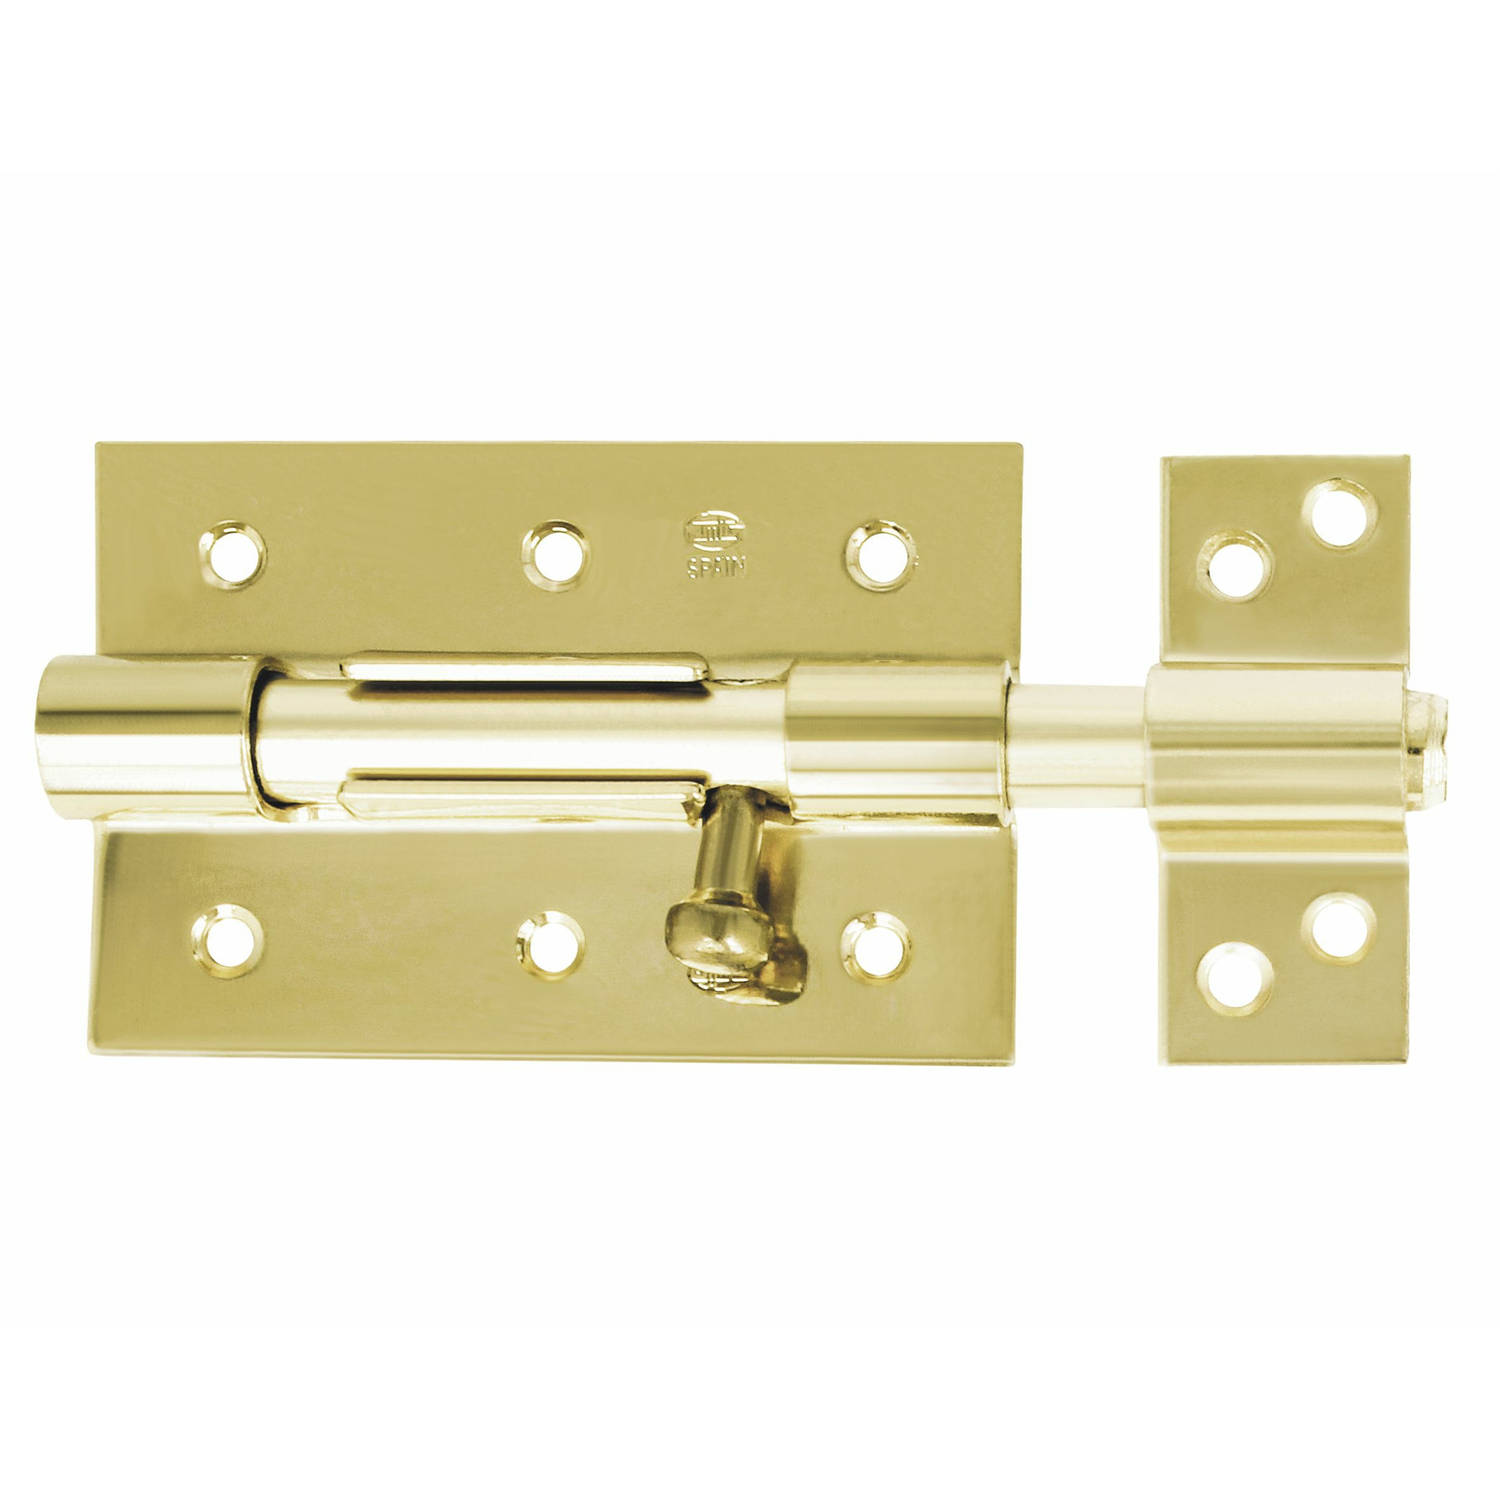 AMIG schuifslot/plaatgrendel - staal - 8.5cm - messing - incl schroeven - deur - raam - geschikt voor hangslot (niet inbegrepen)